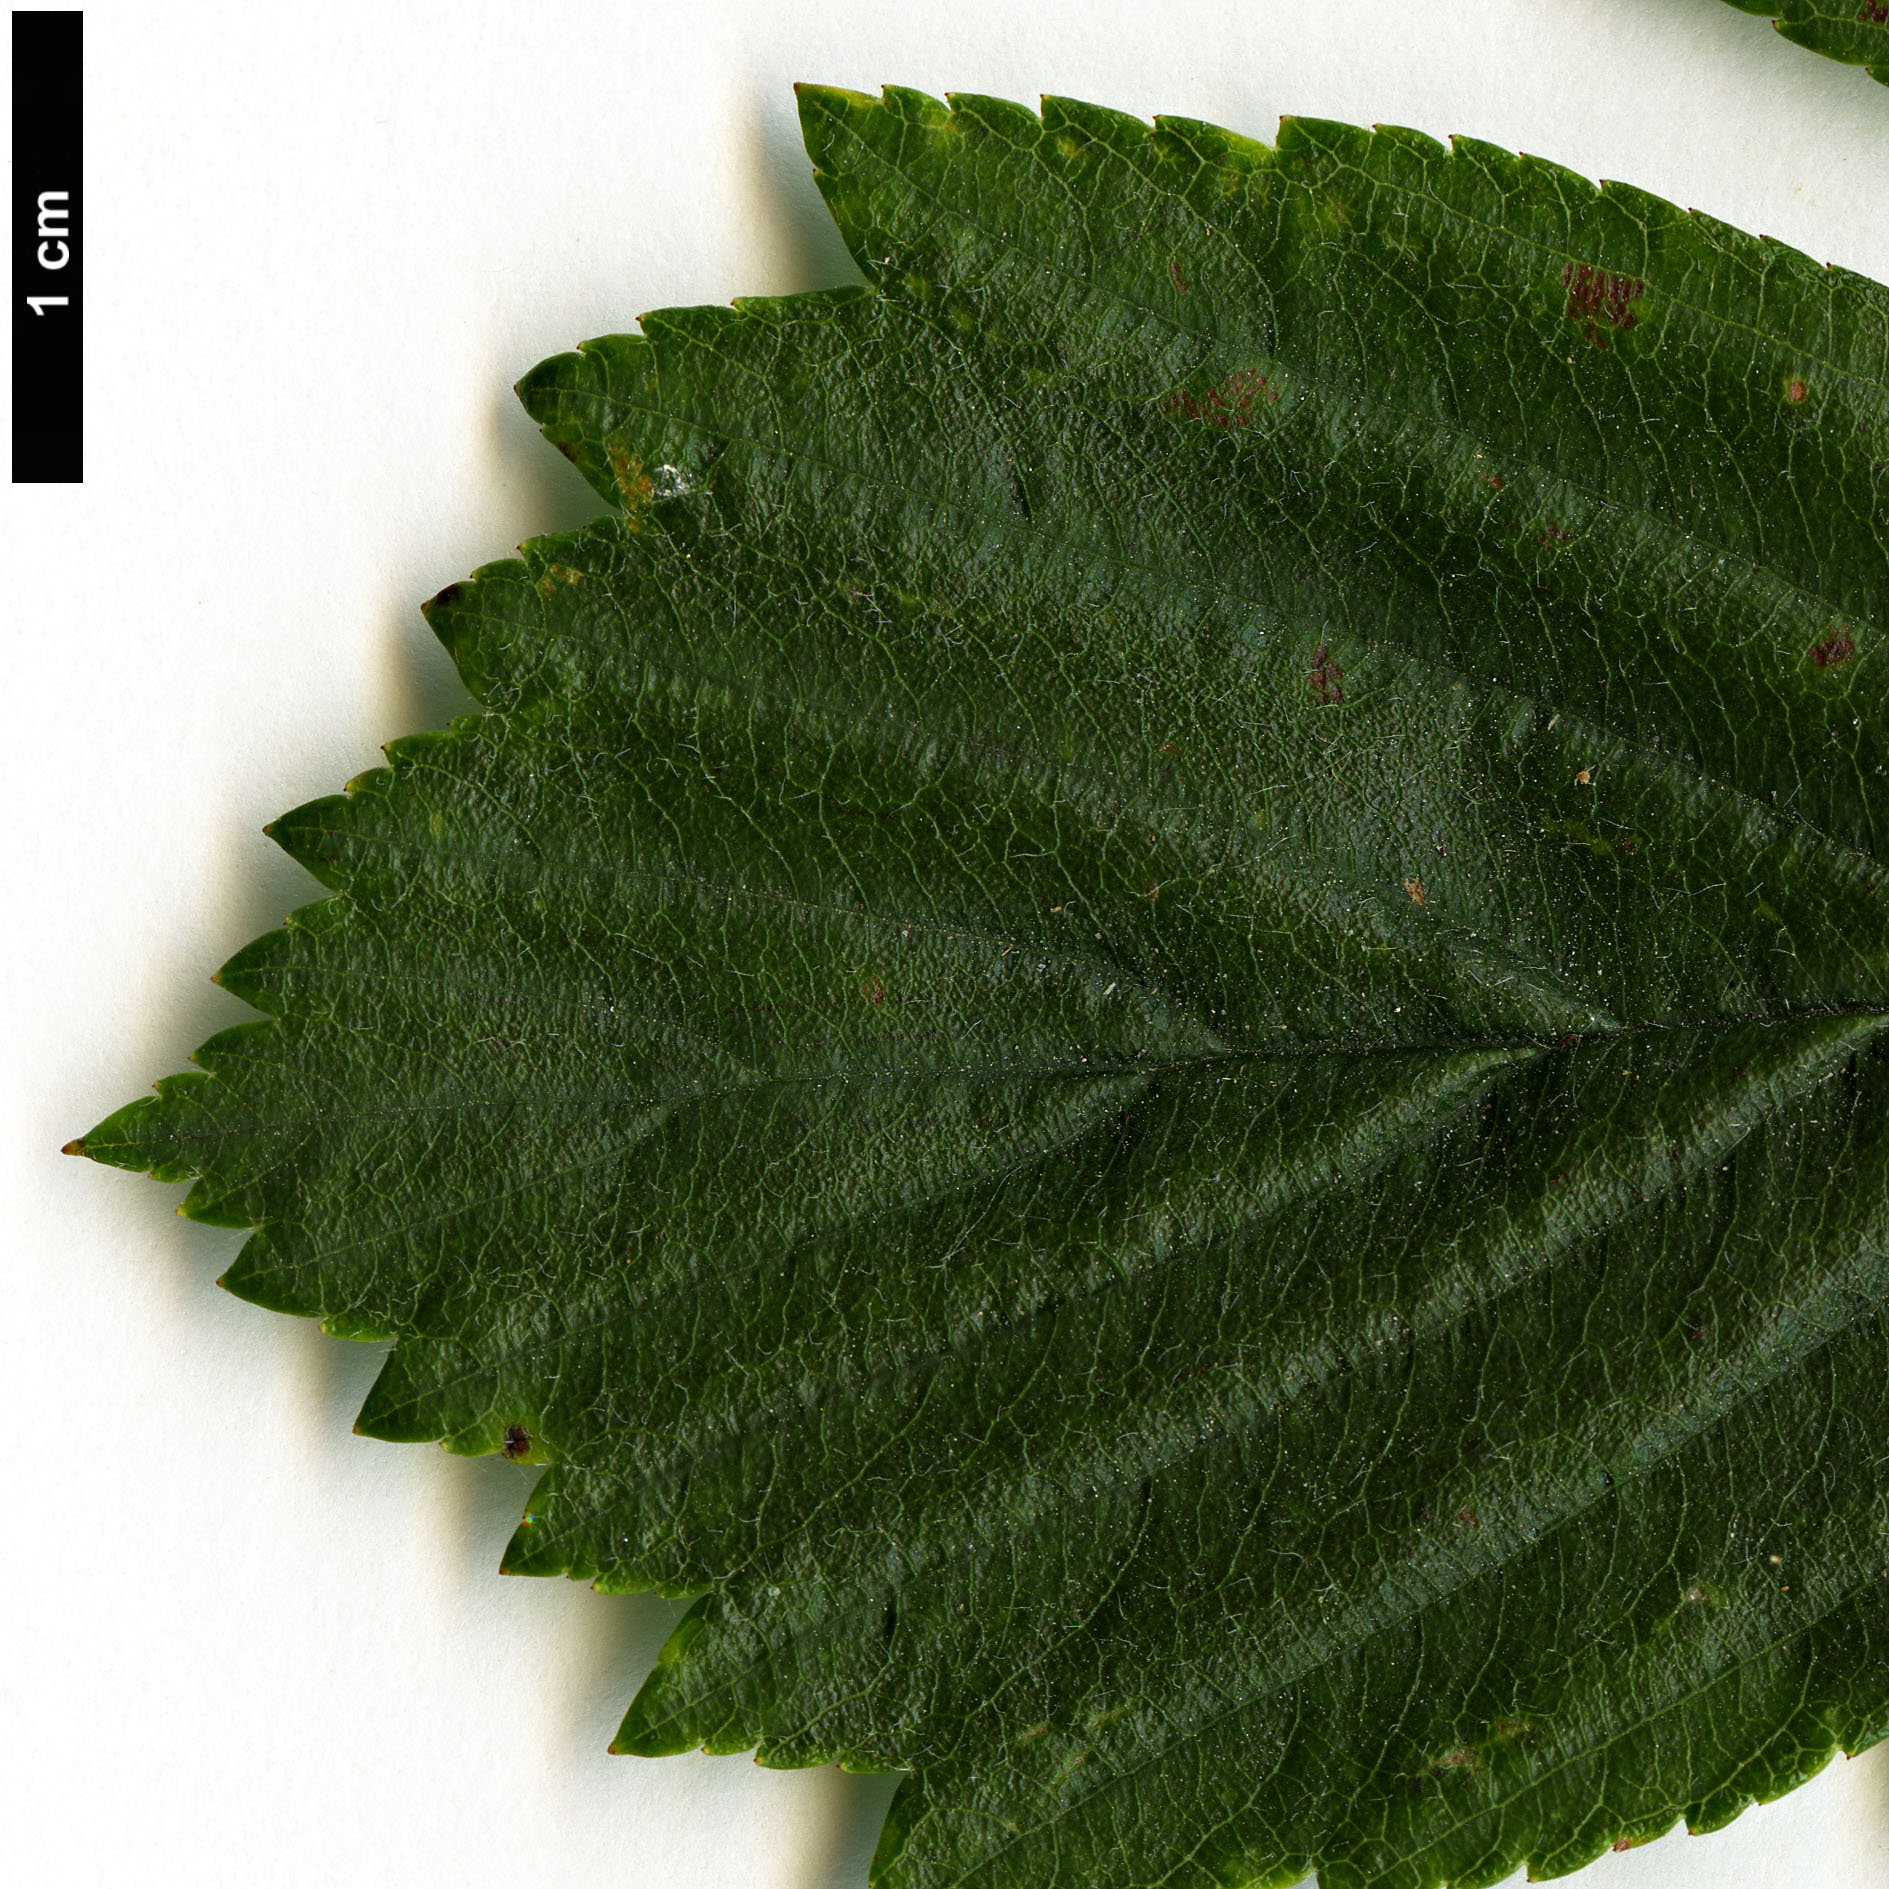 High resolution image: Family: Rosaceae - Genus: Crataegus - Taxon: punctata